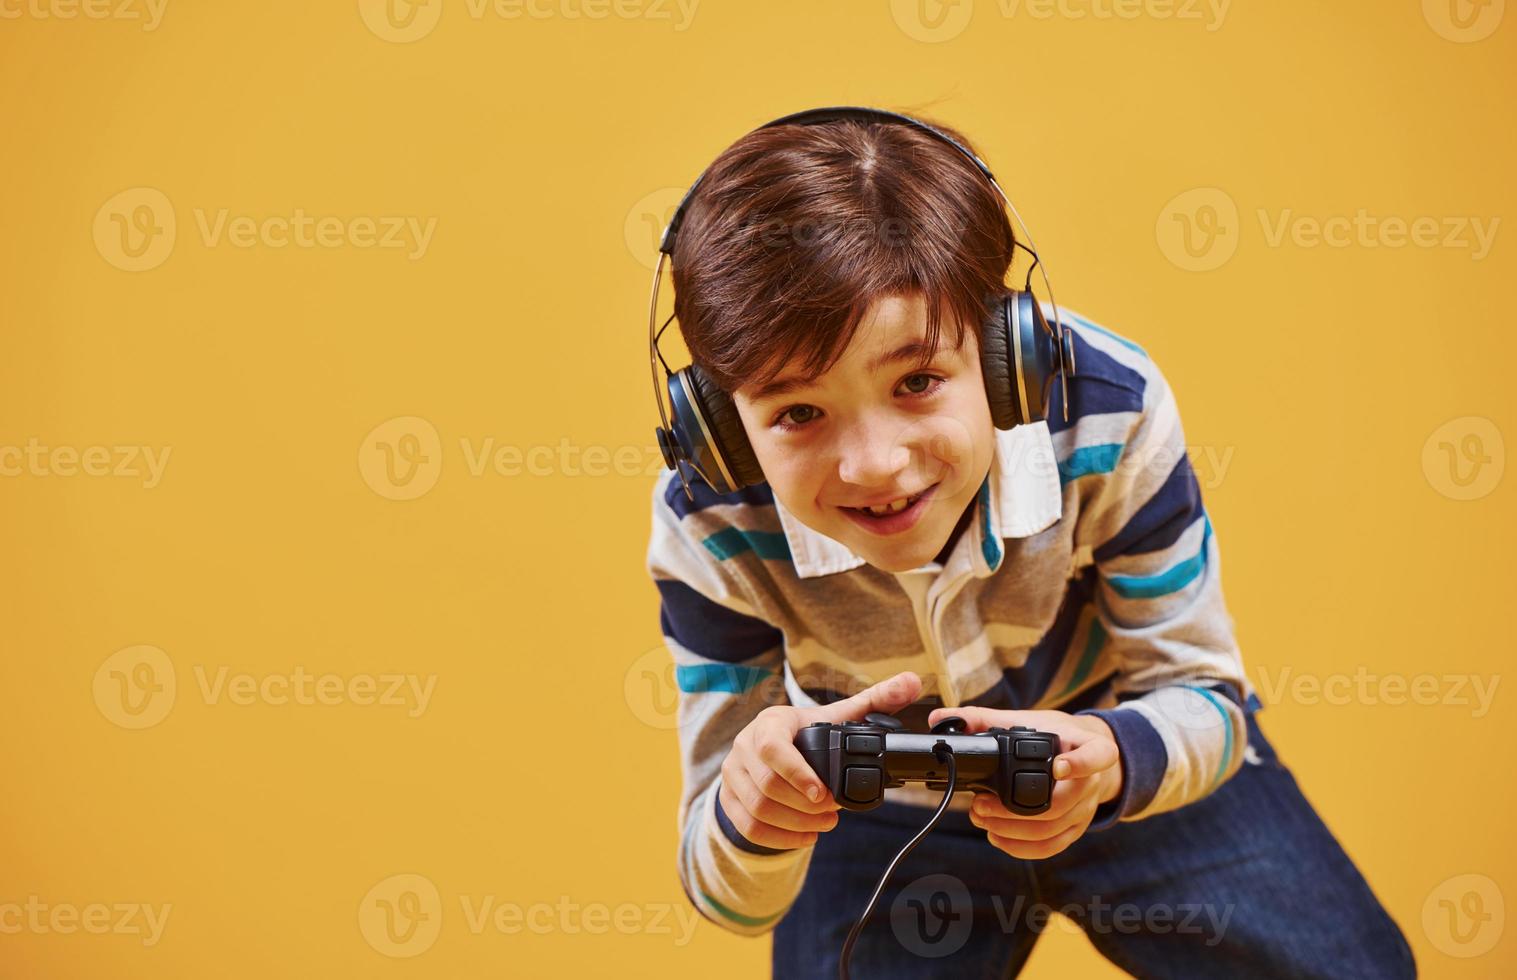 lindo niño jugando videojuegos en el estudio con fondo amarillo foto